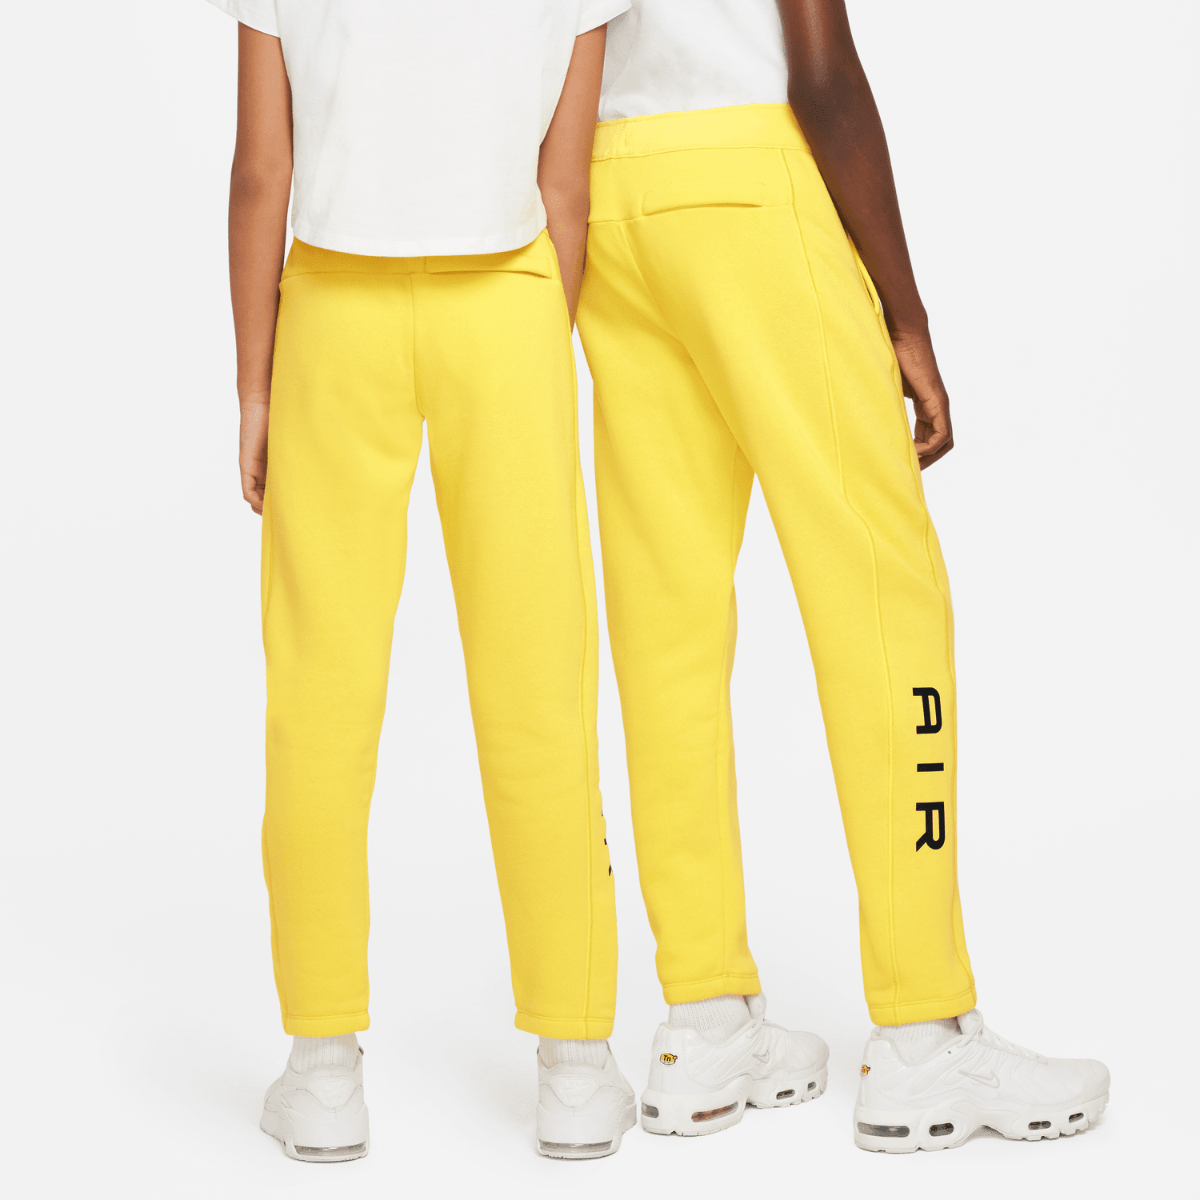 Nike Air Pants Junior - Yellow/Black